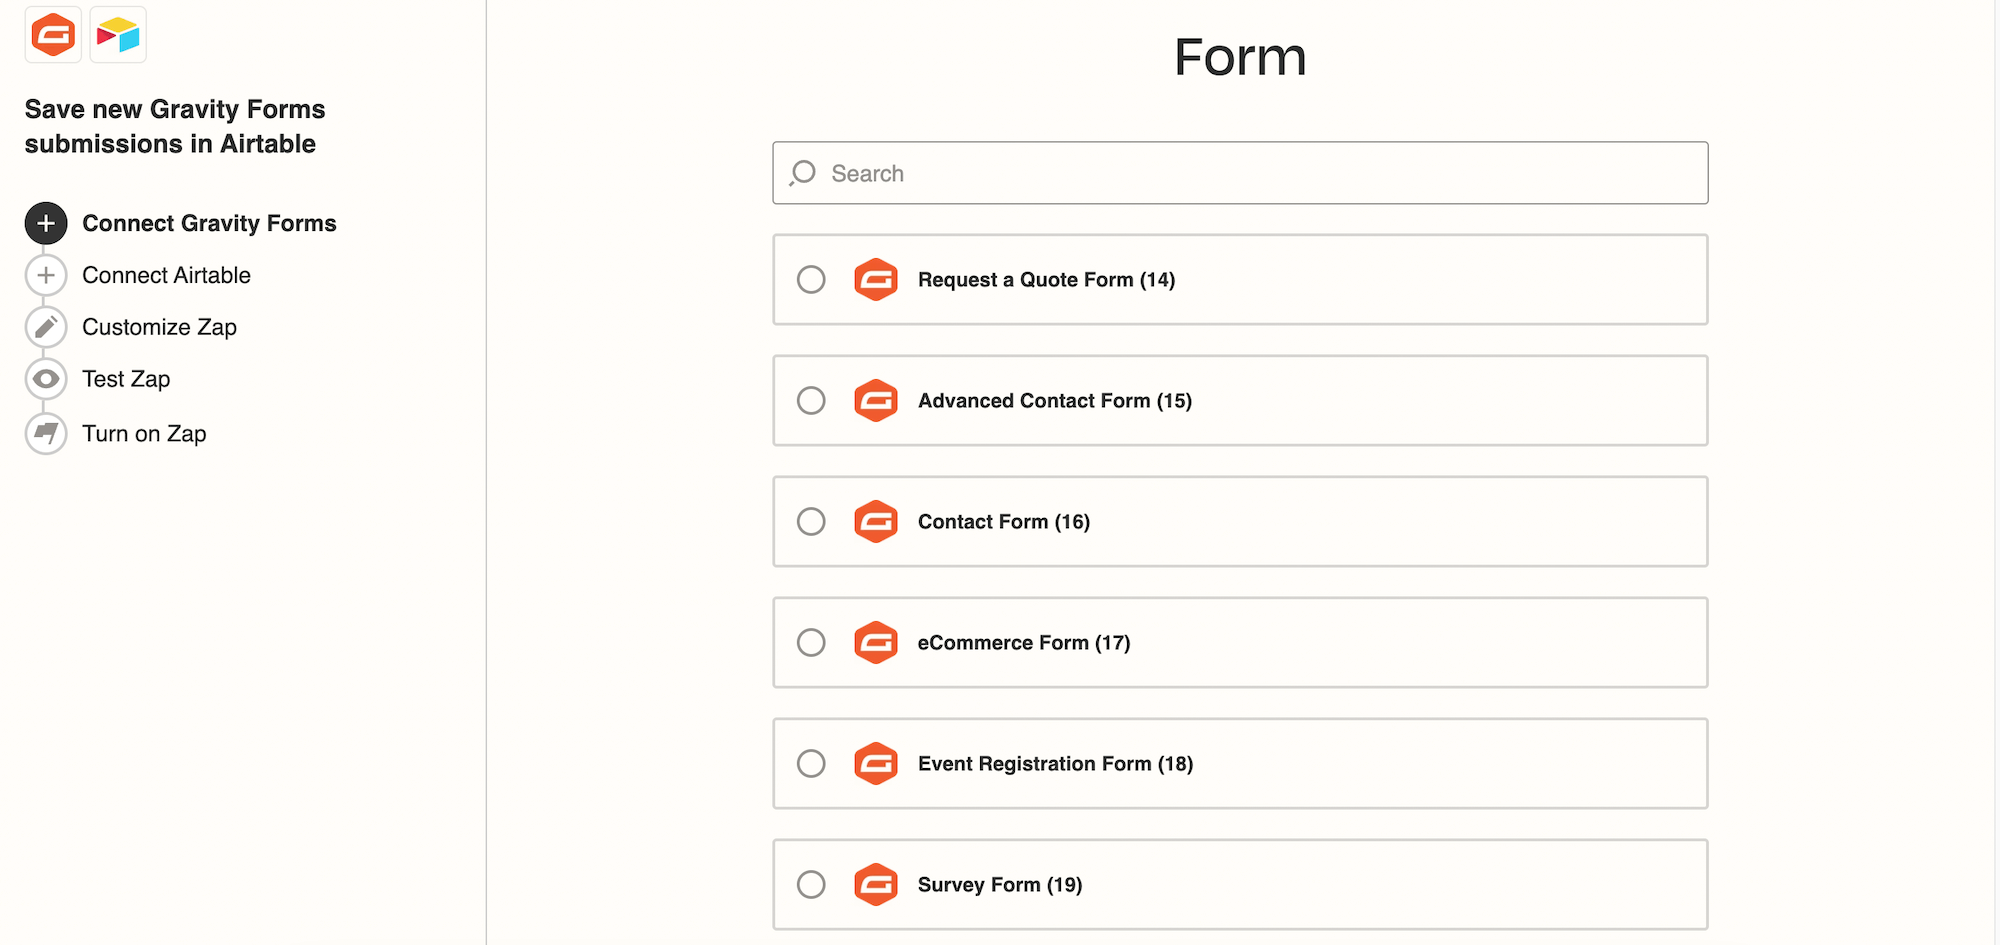 Choosing a form